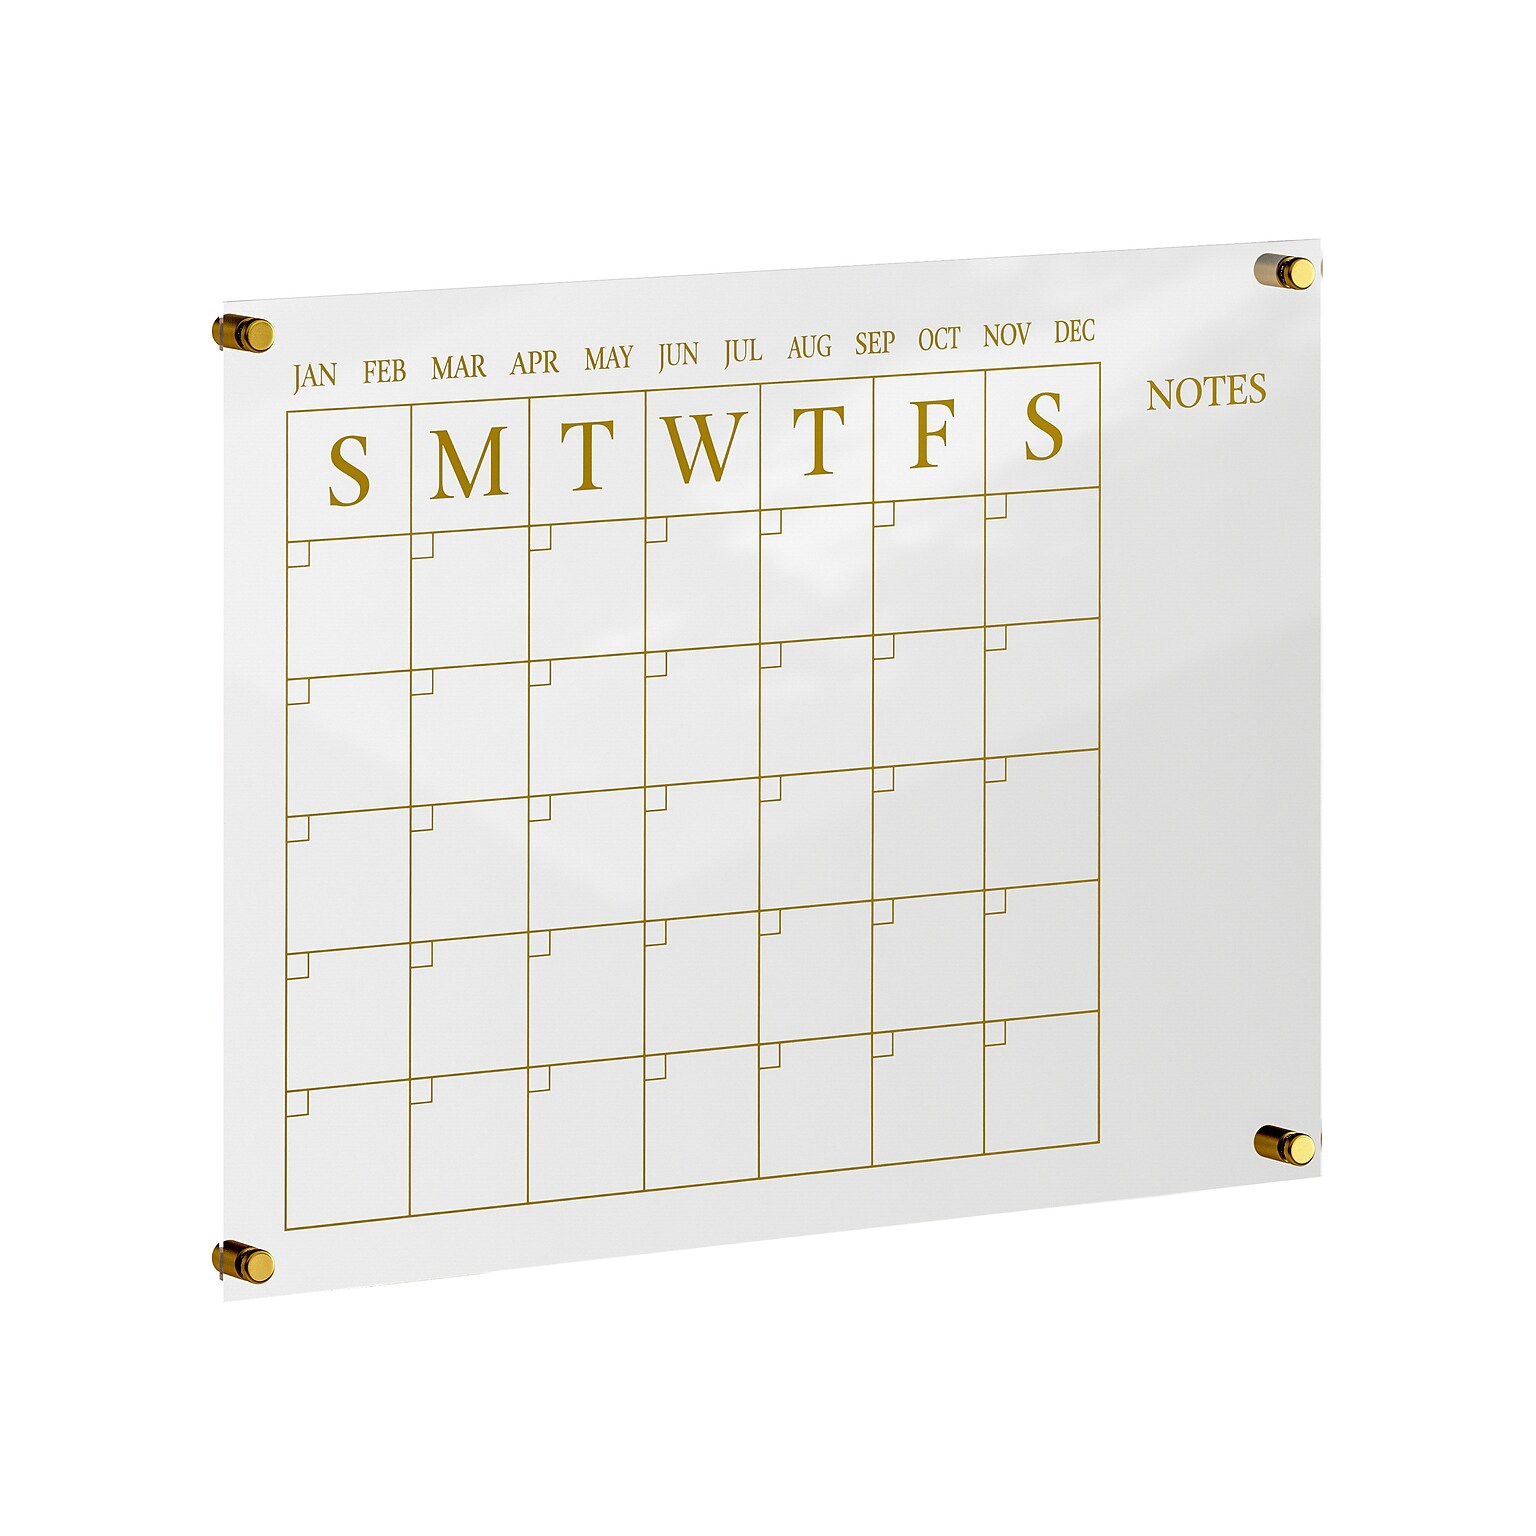 Martha Stewart Grayson Acrylic Gold Print Dry Erase Wall Calendar with Notes, 24 x 18 (BRAC4560GDCGD)